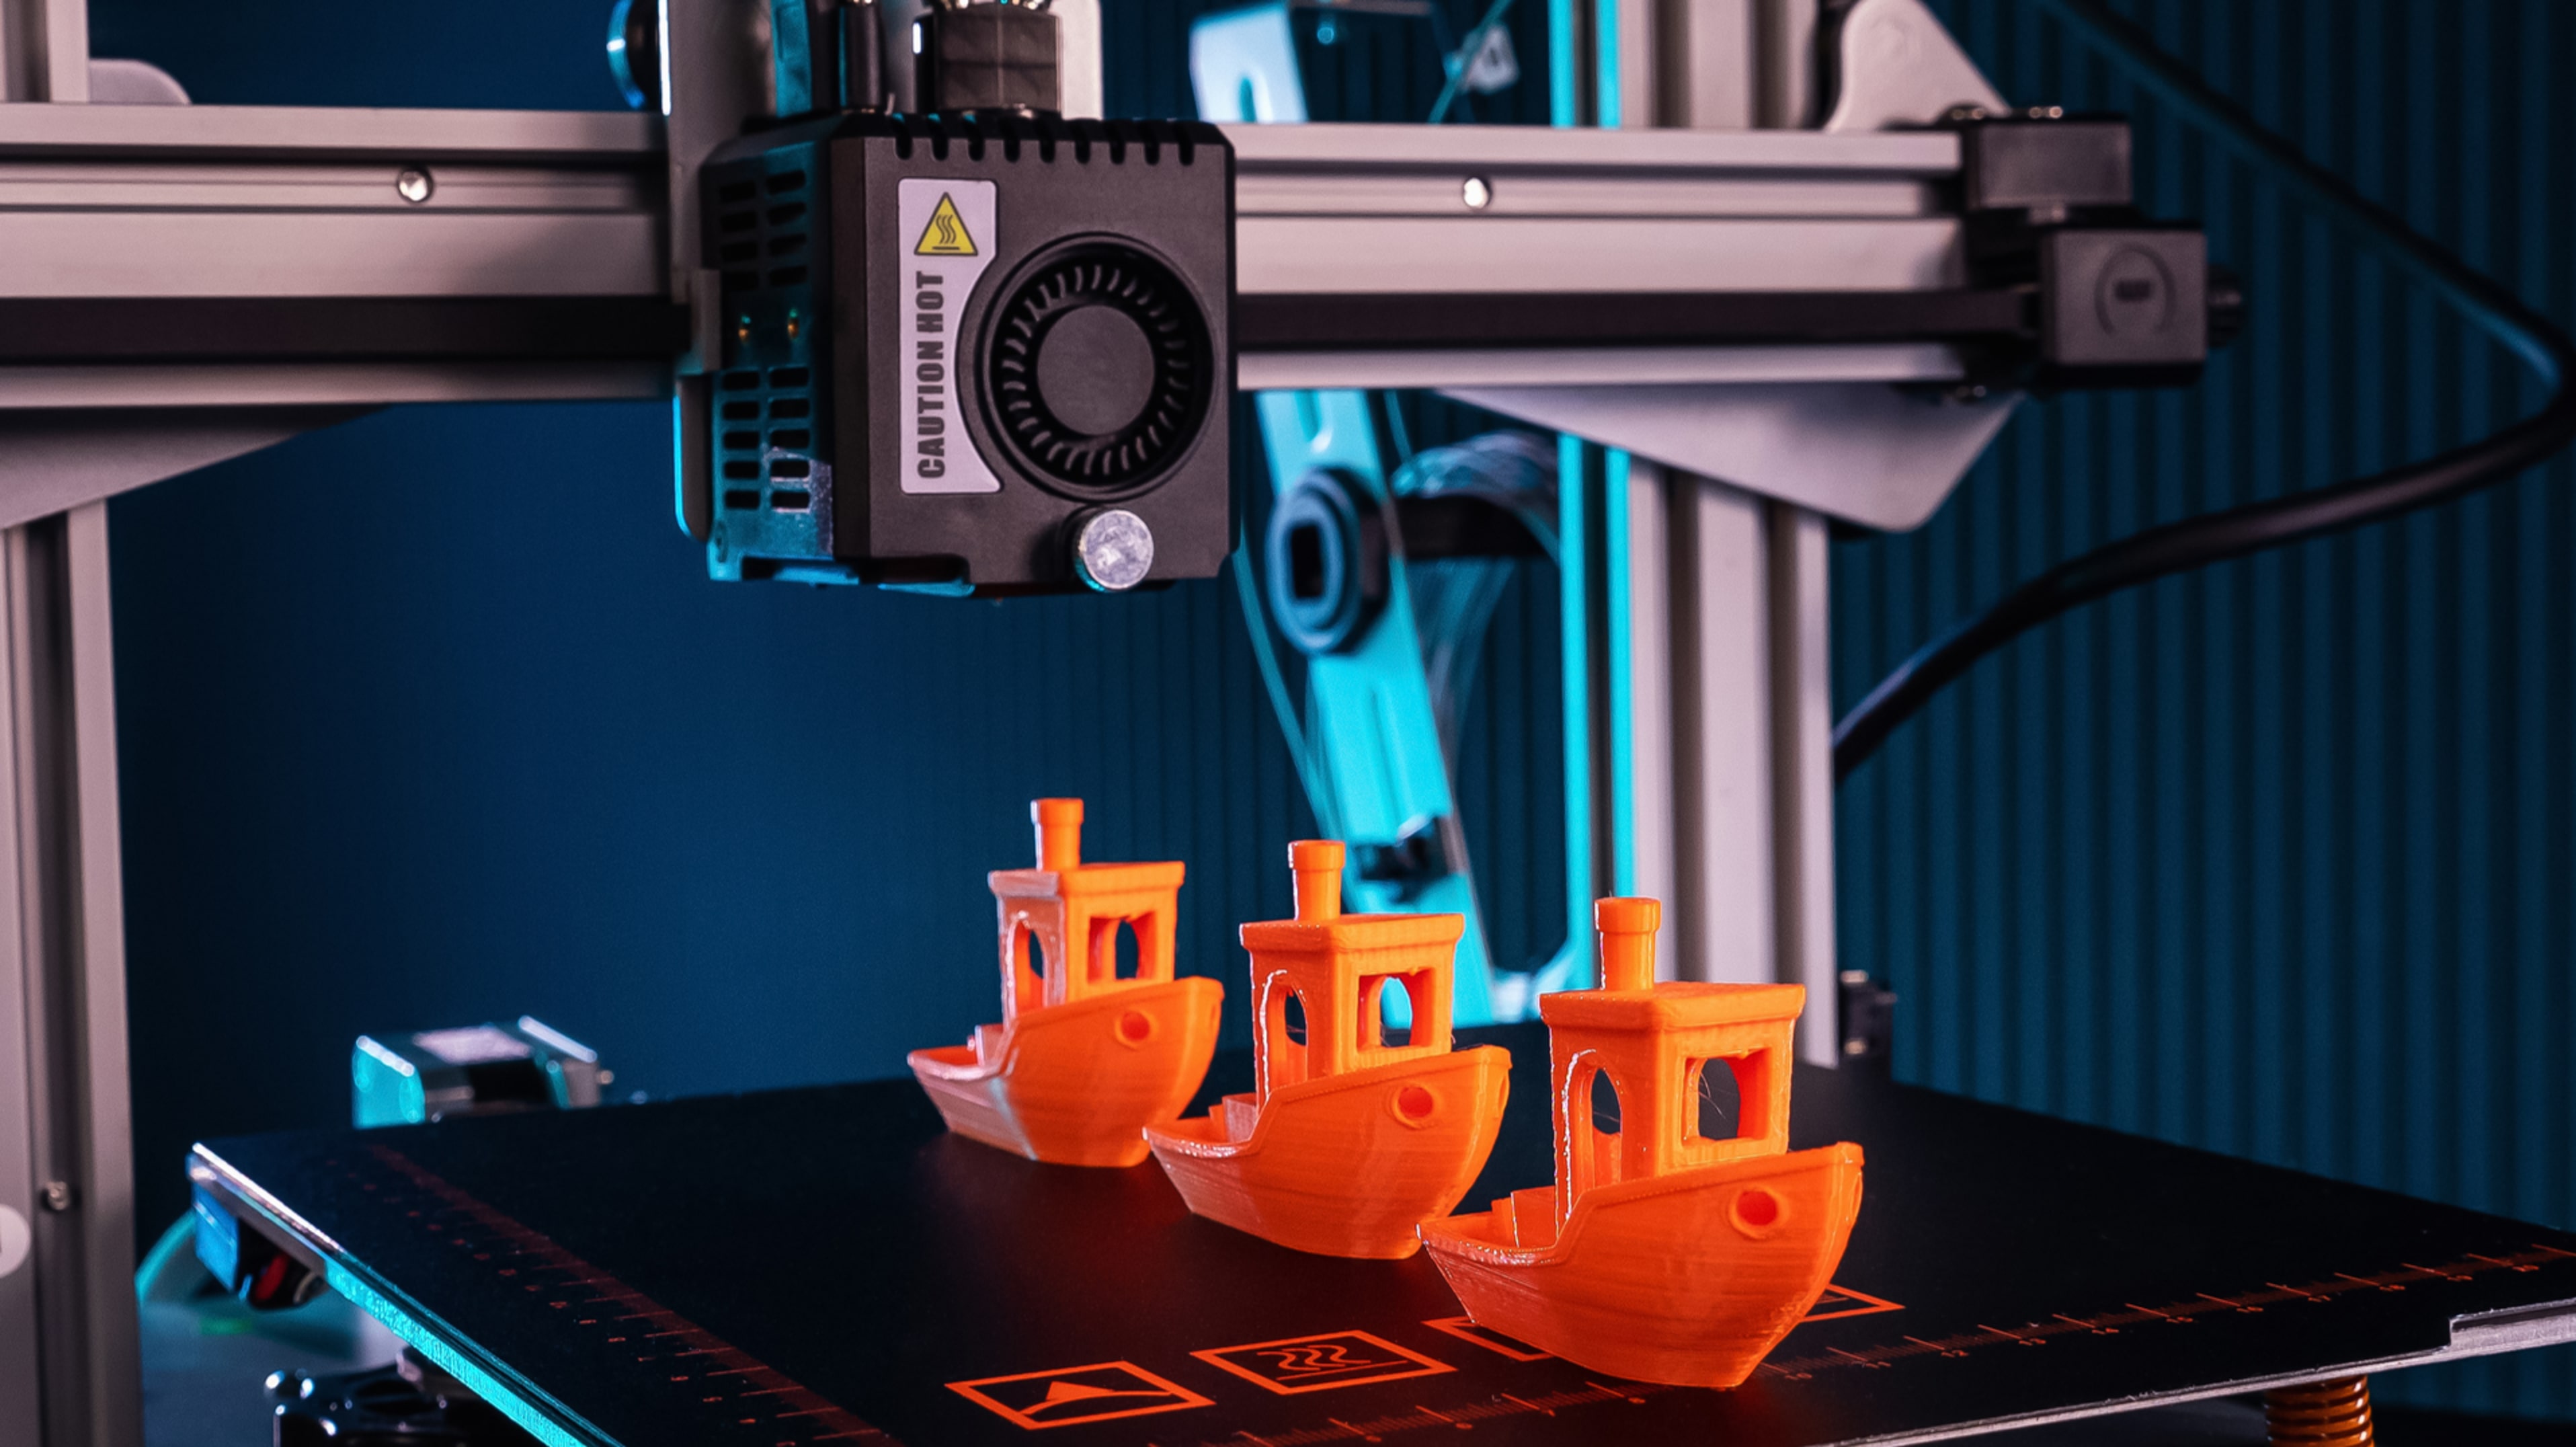 Maggiori informazioni su "Le 10 stampanti 3D più vendute su Amazon"